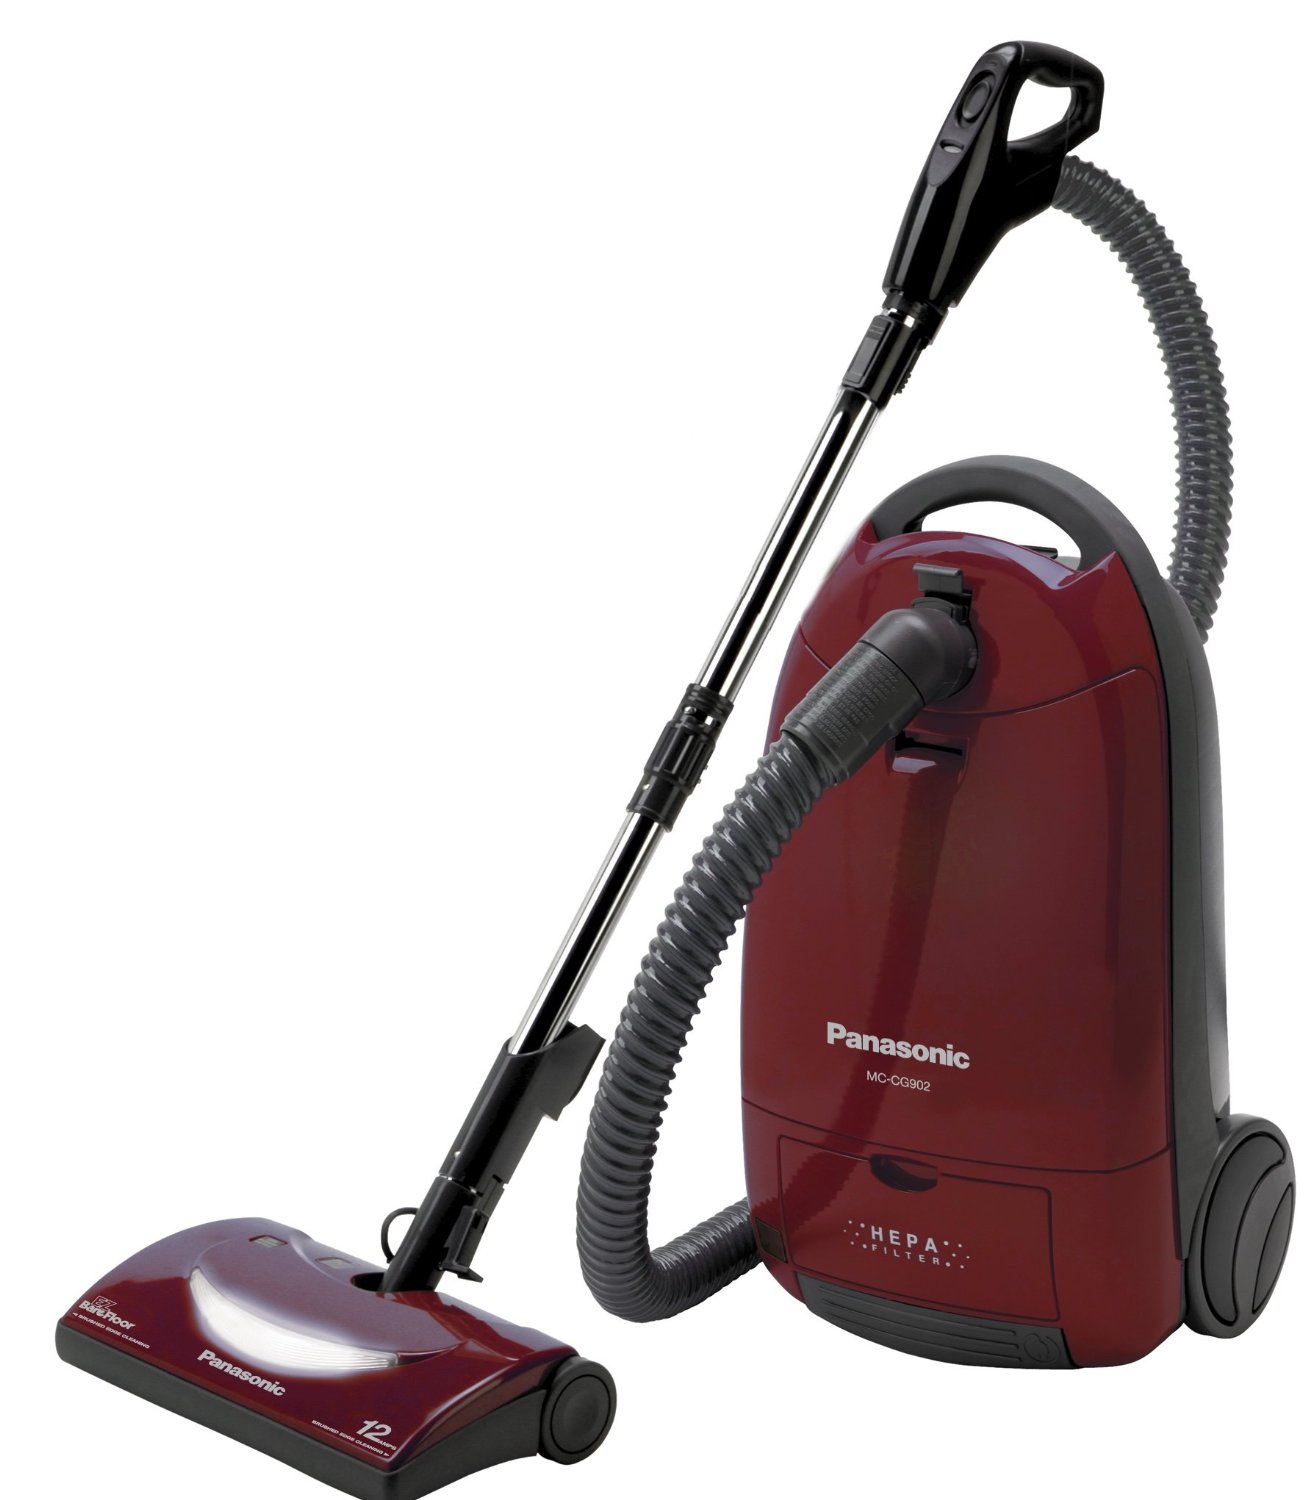 Vacuum cleaner repairs in Barnet